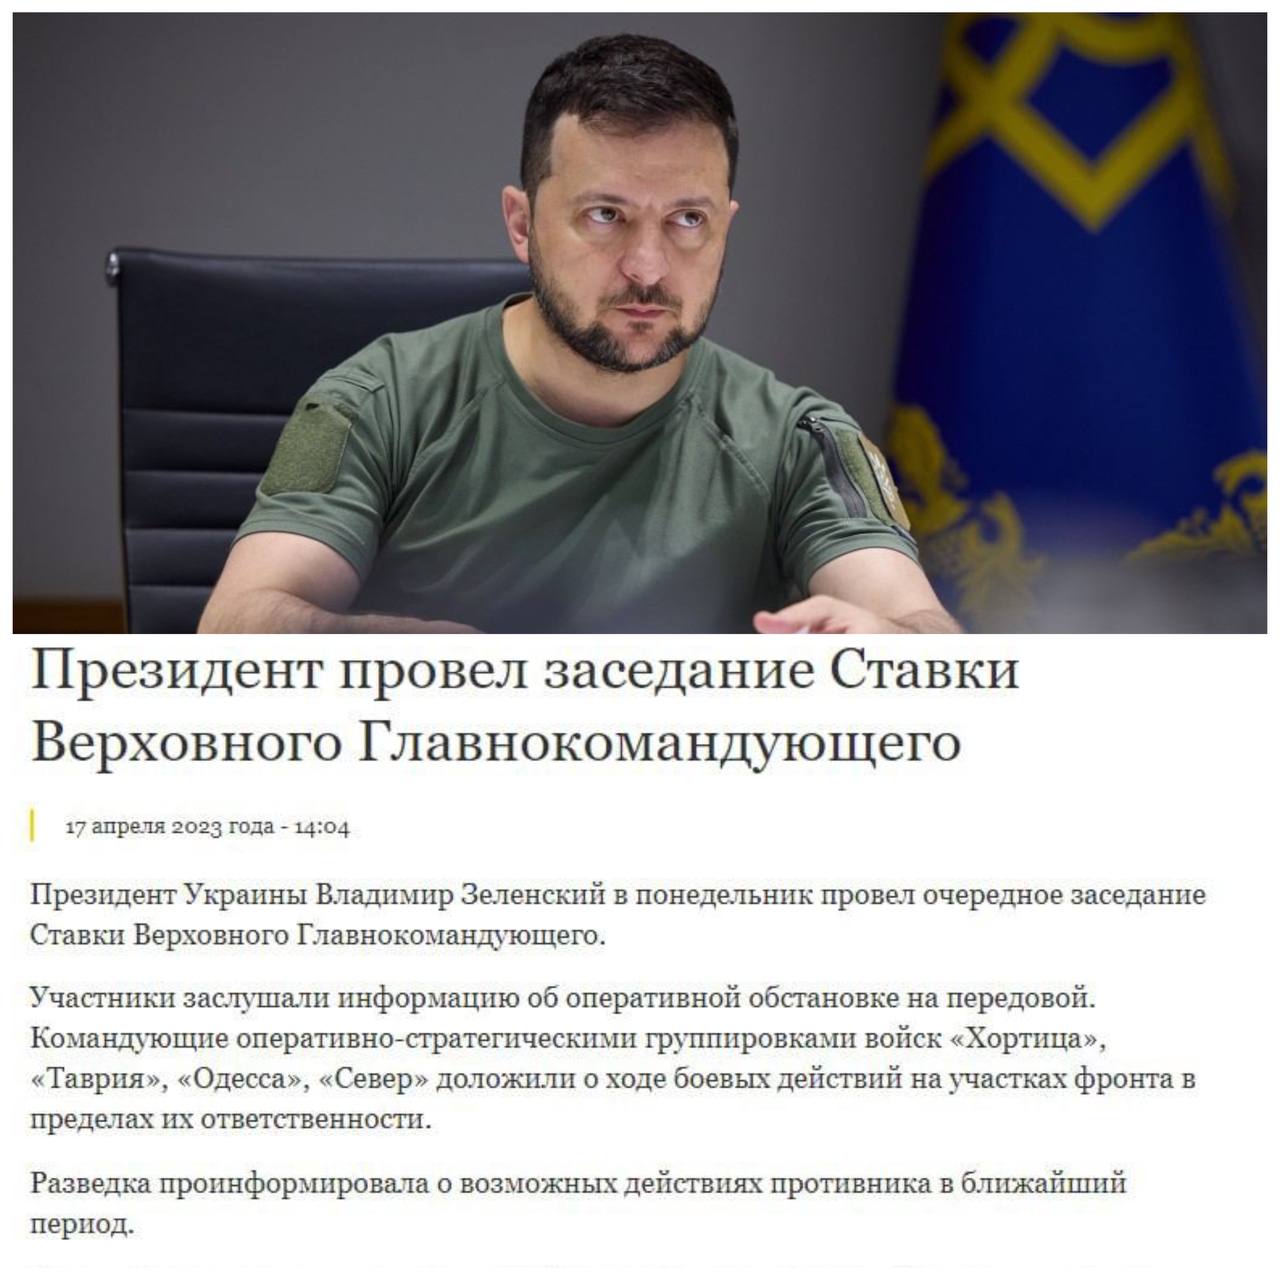 ⚡️Володимир Зеленський провів нове засідання Ставки Верховного Головнокомандувача